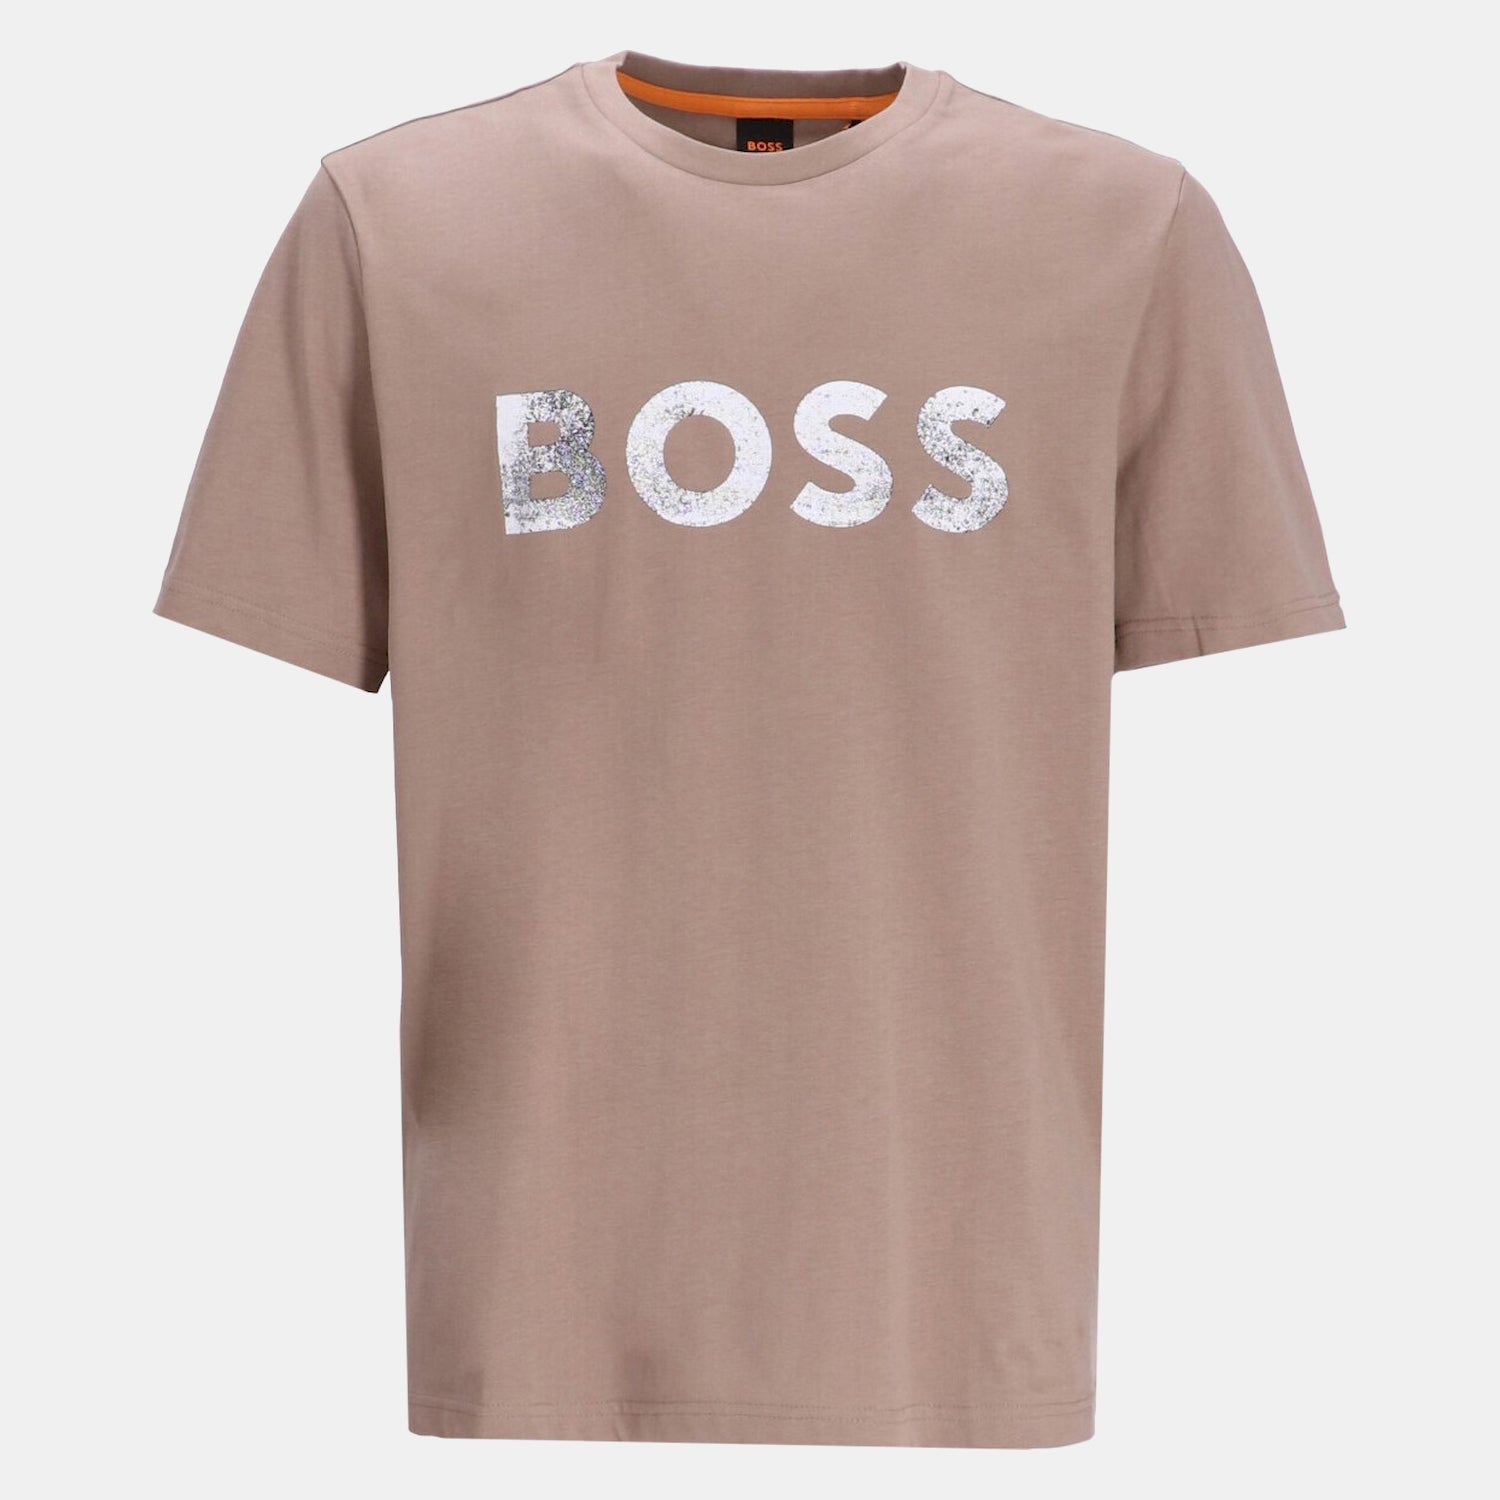 Boss T Shirt Tebossocean Brown Castanho_shot1